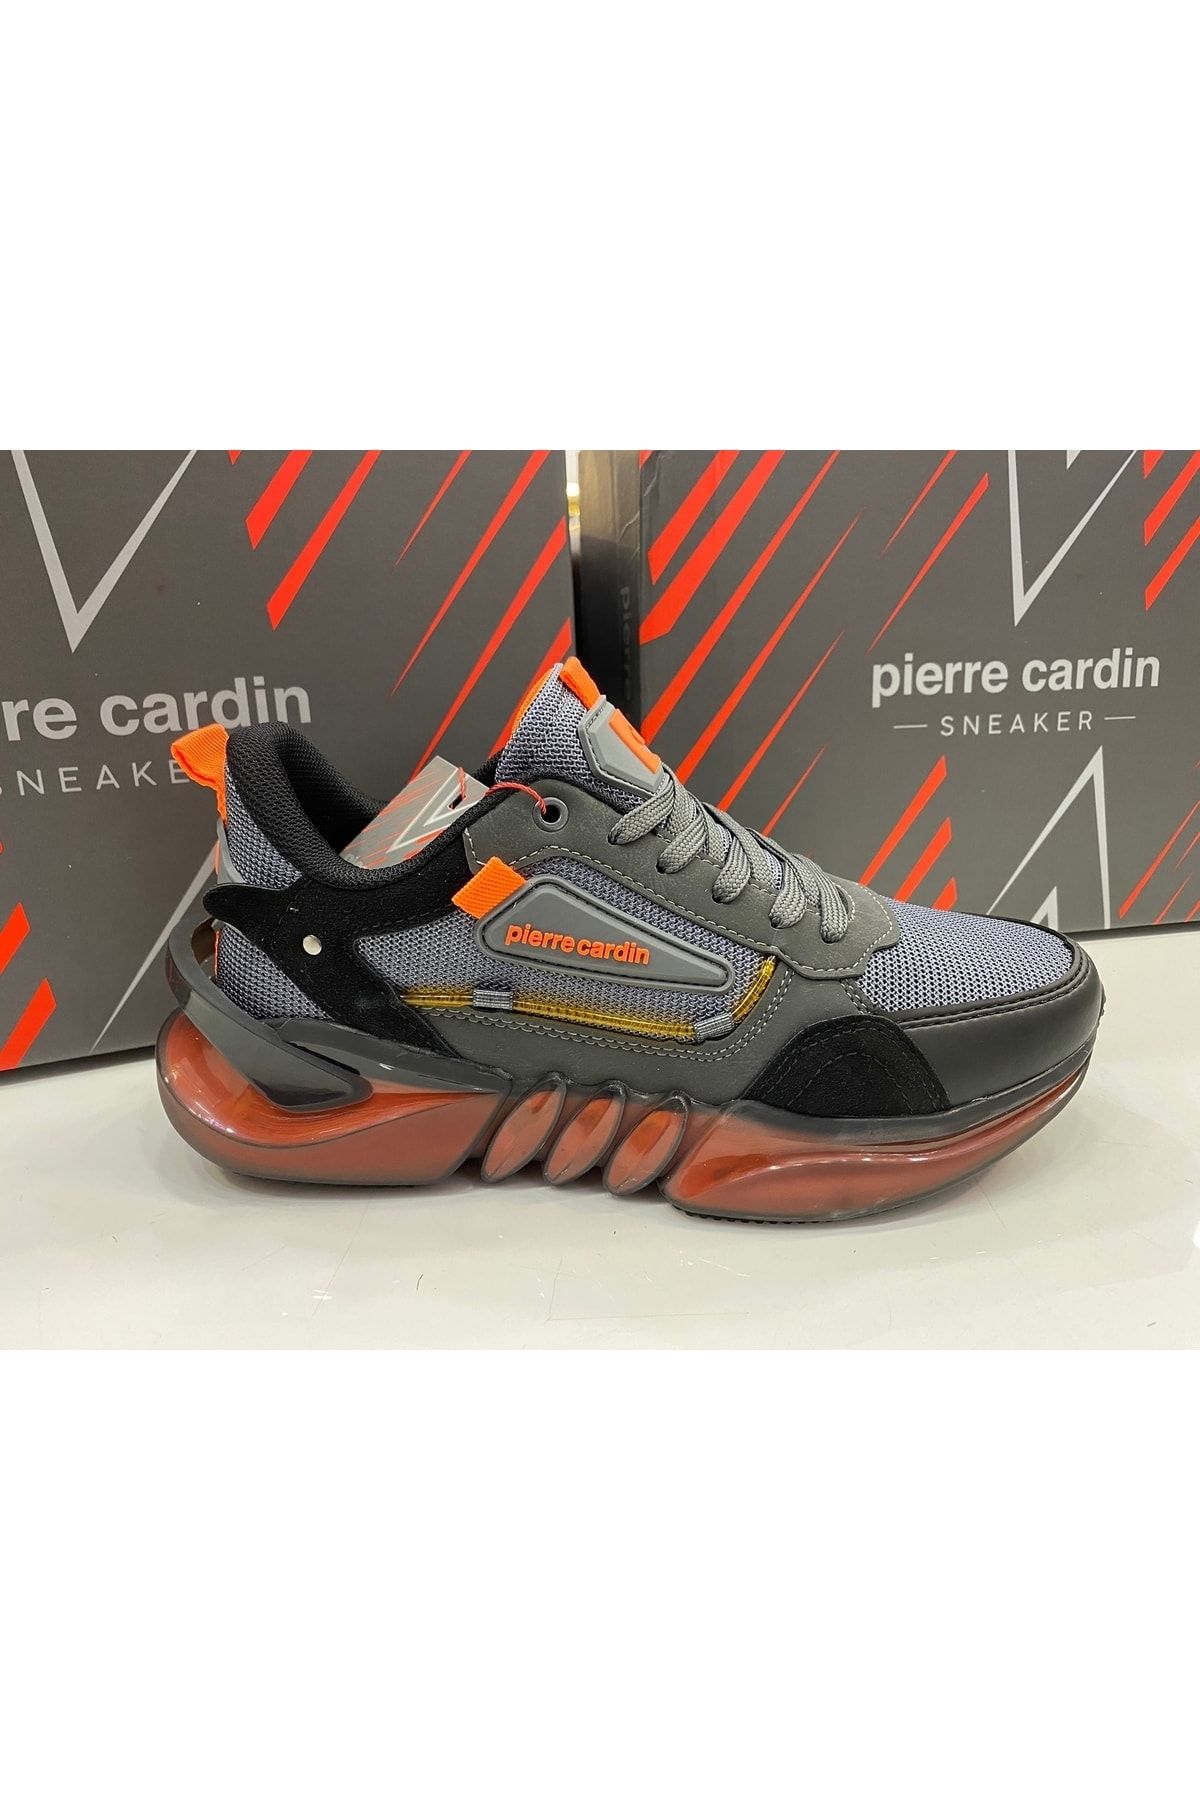 Pierre Cardin Pc-31362 Füme Erkek Spor Ayakkabı